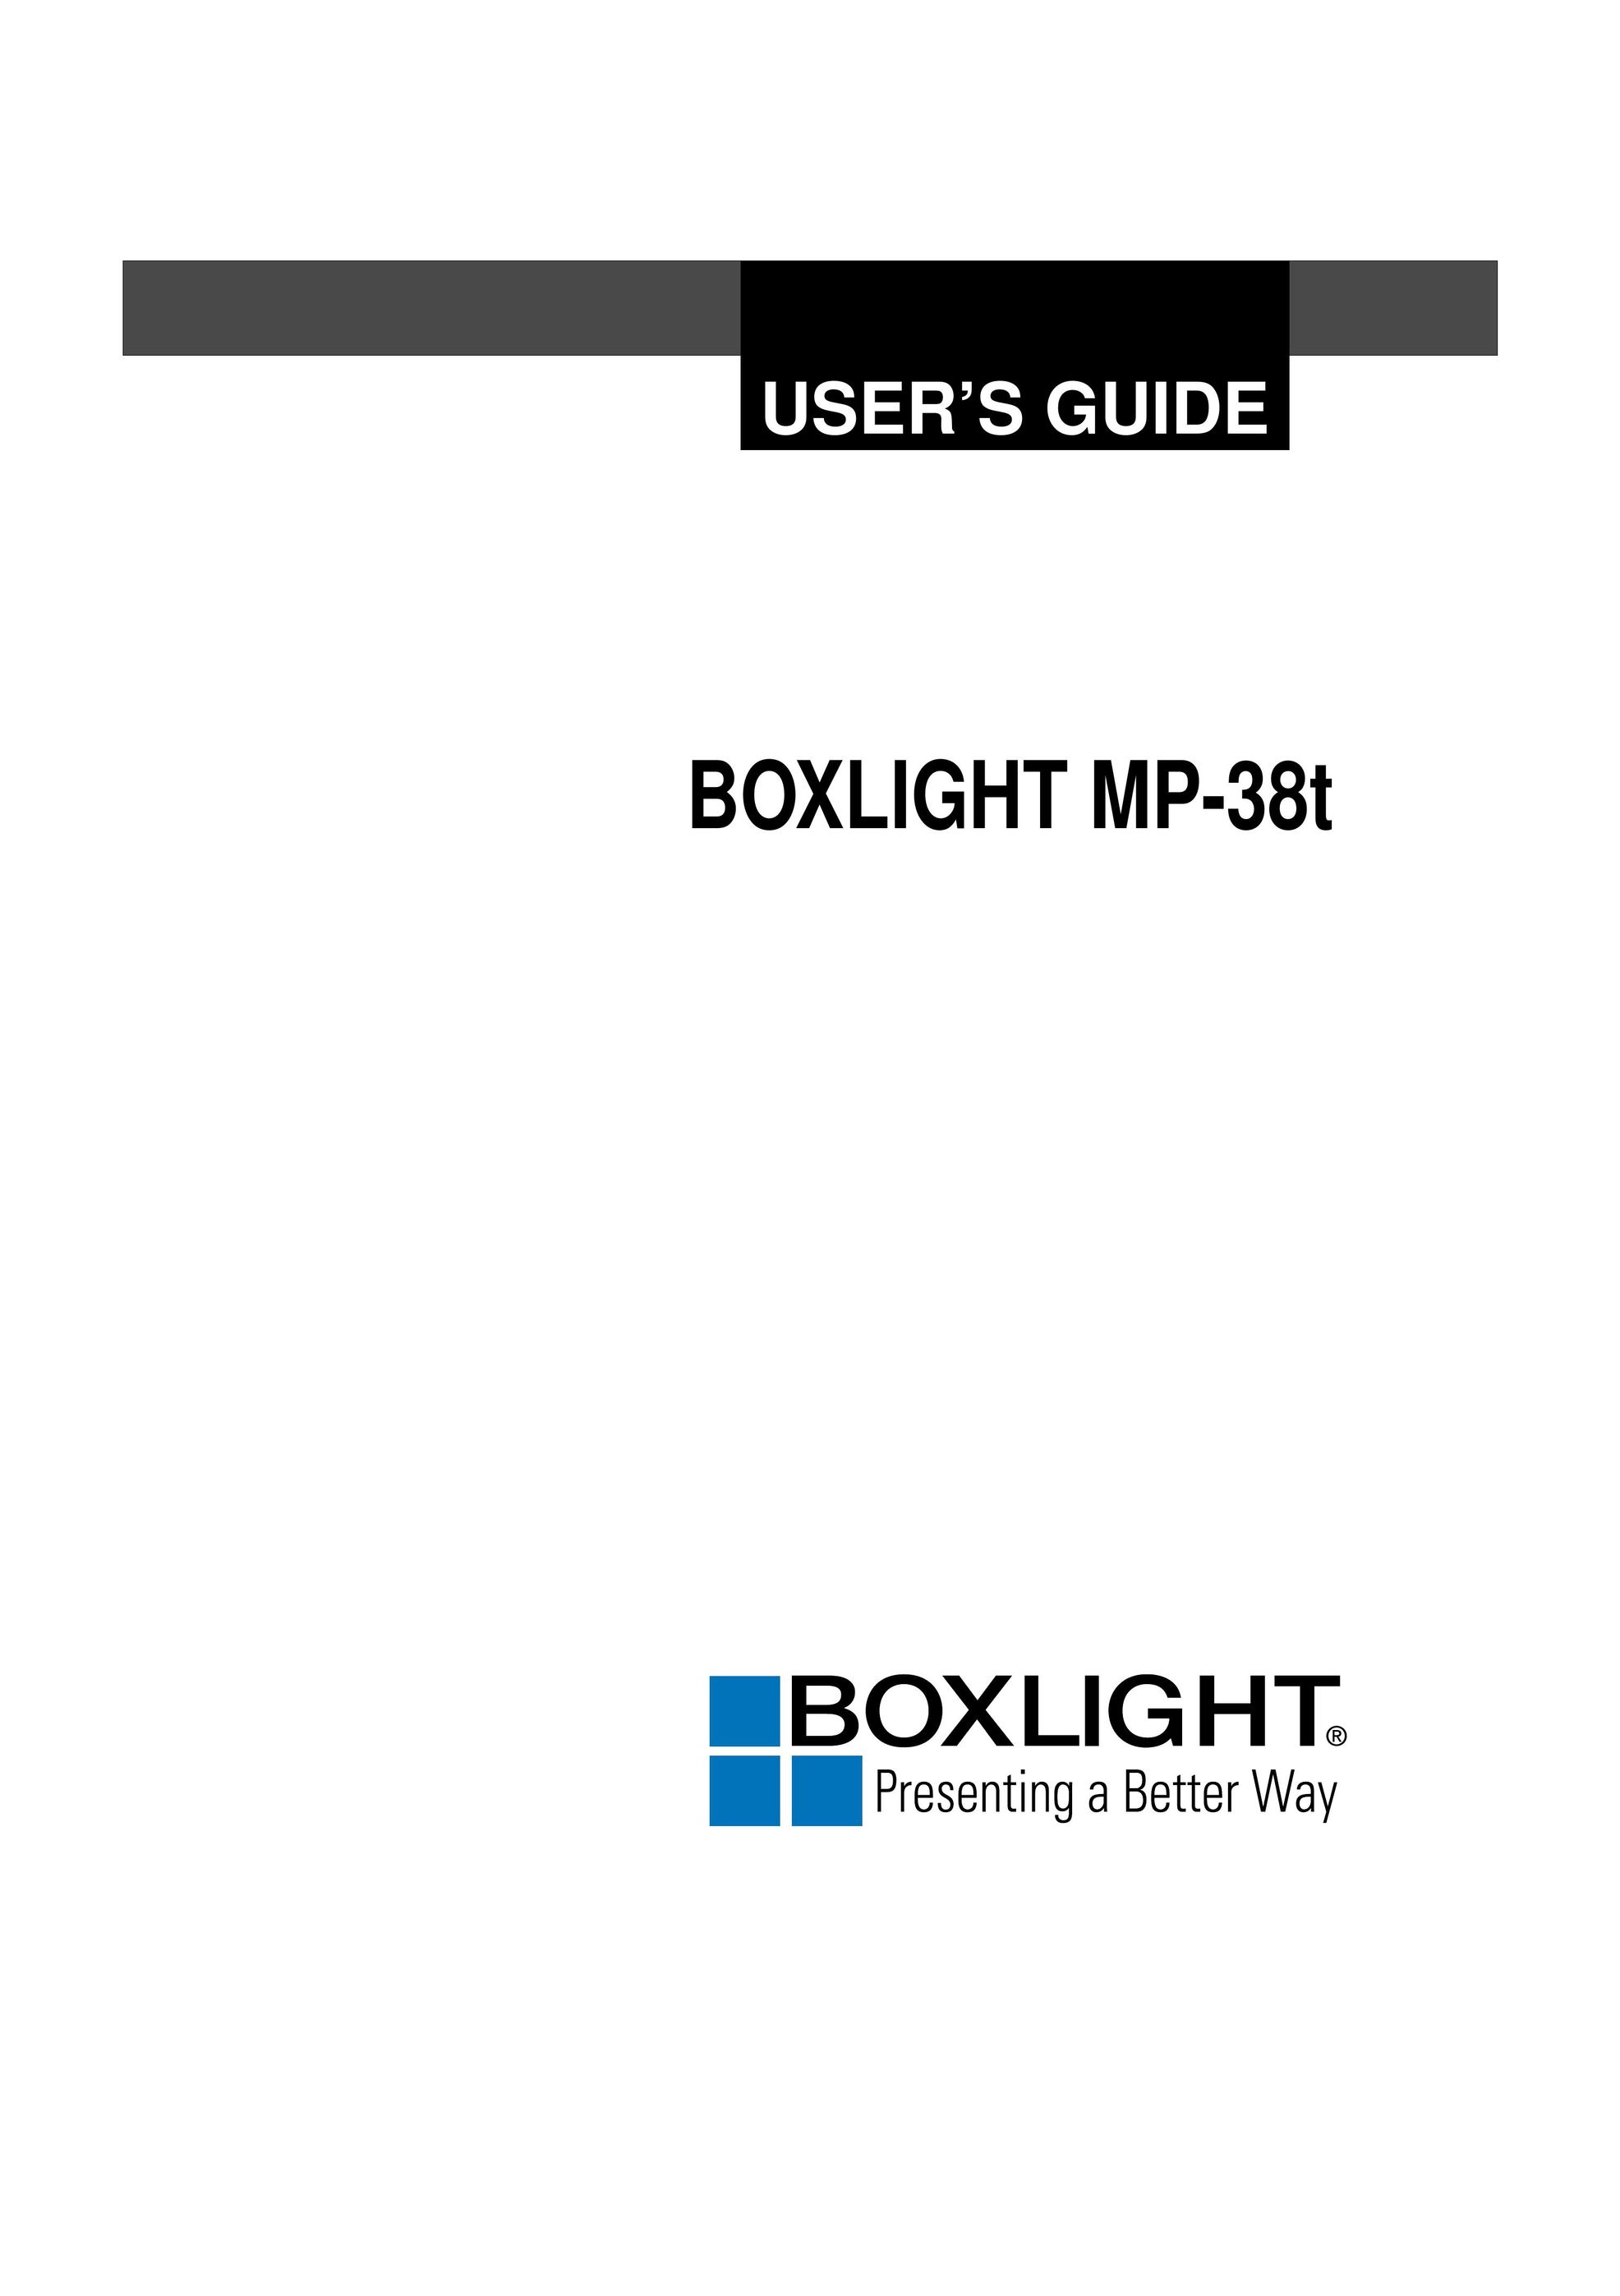 BOXLIGHT MP-38t Projector User Manual